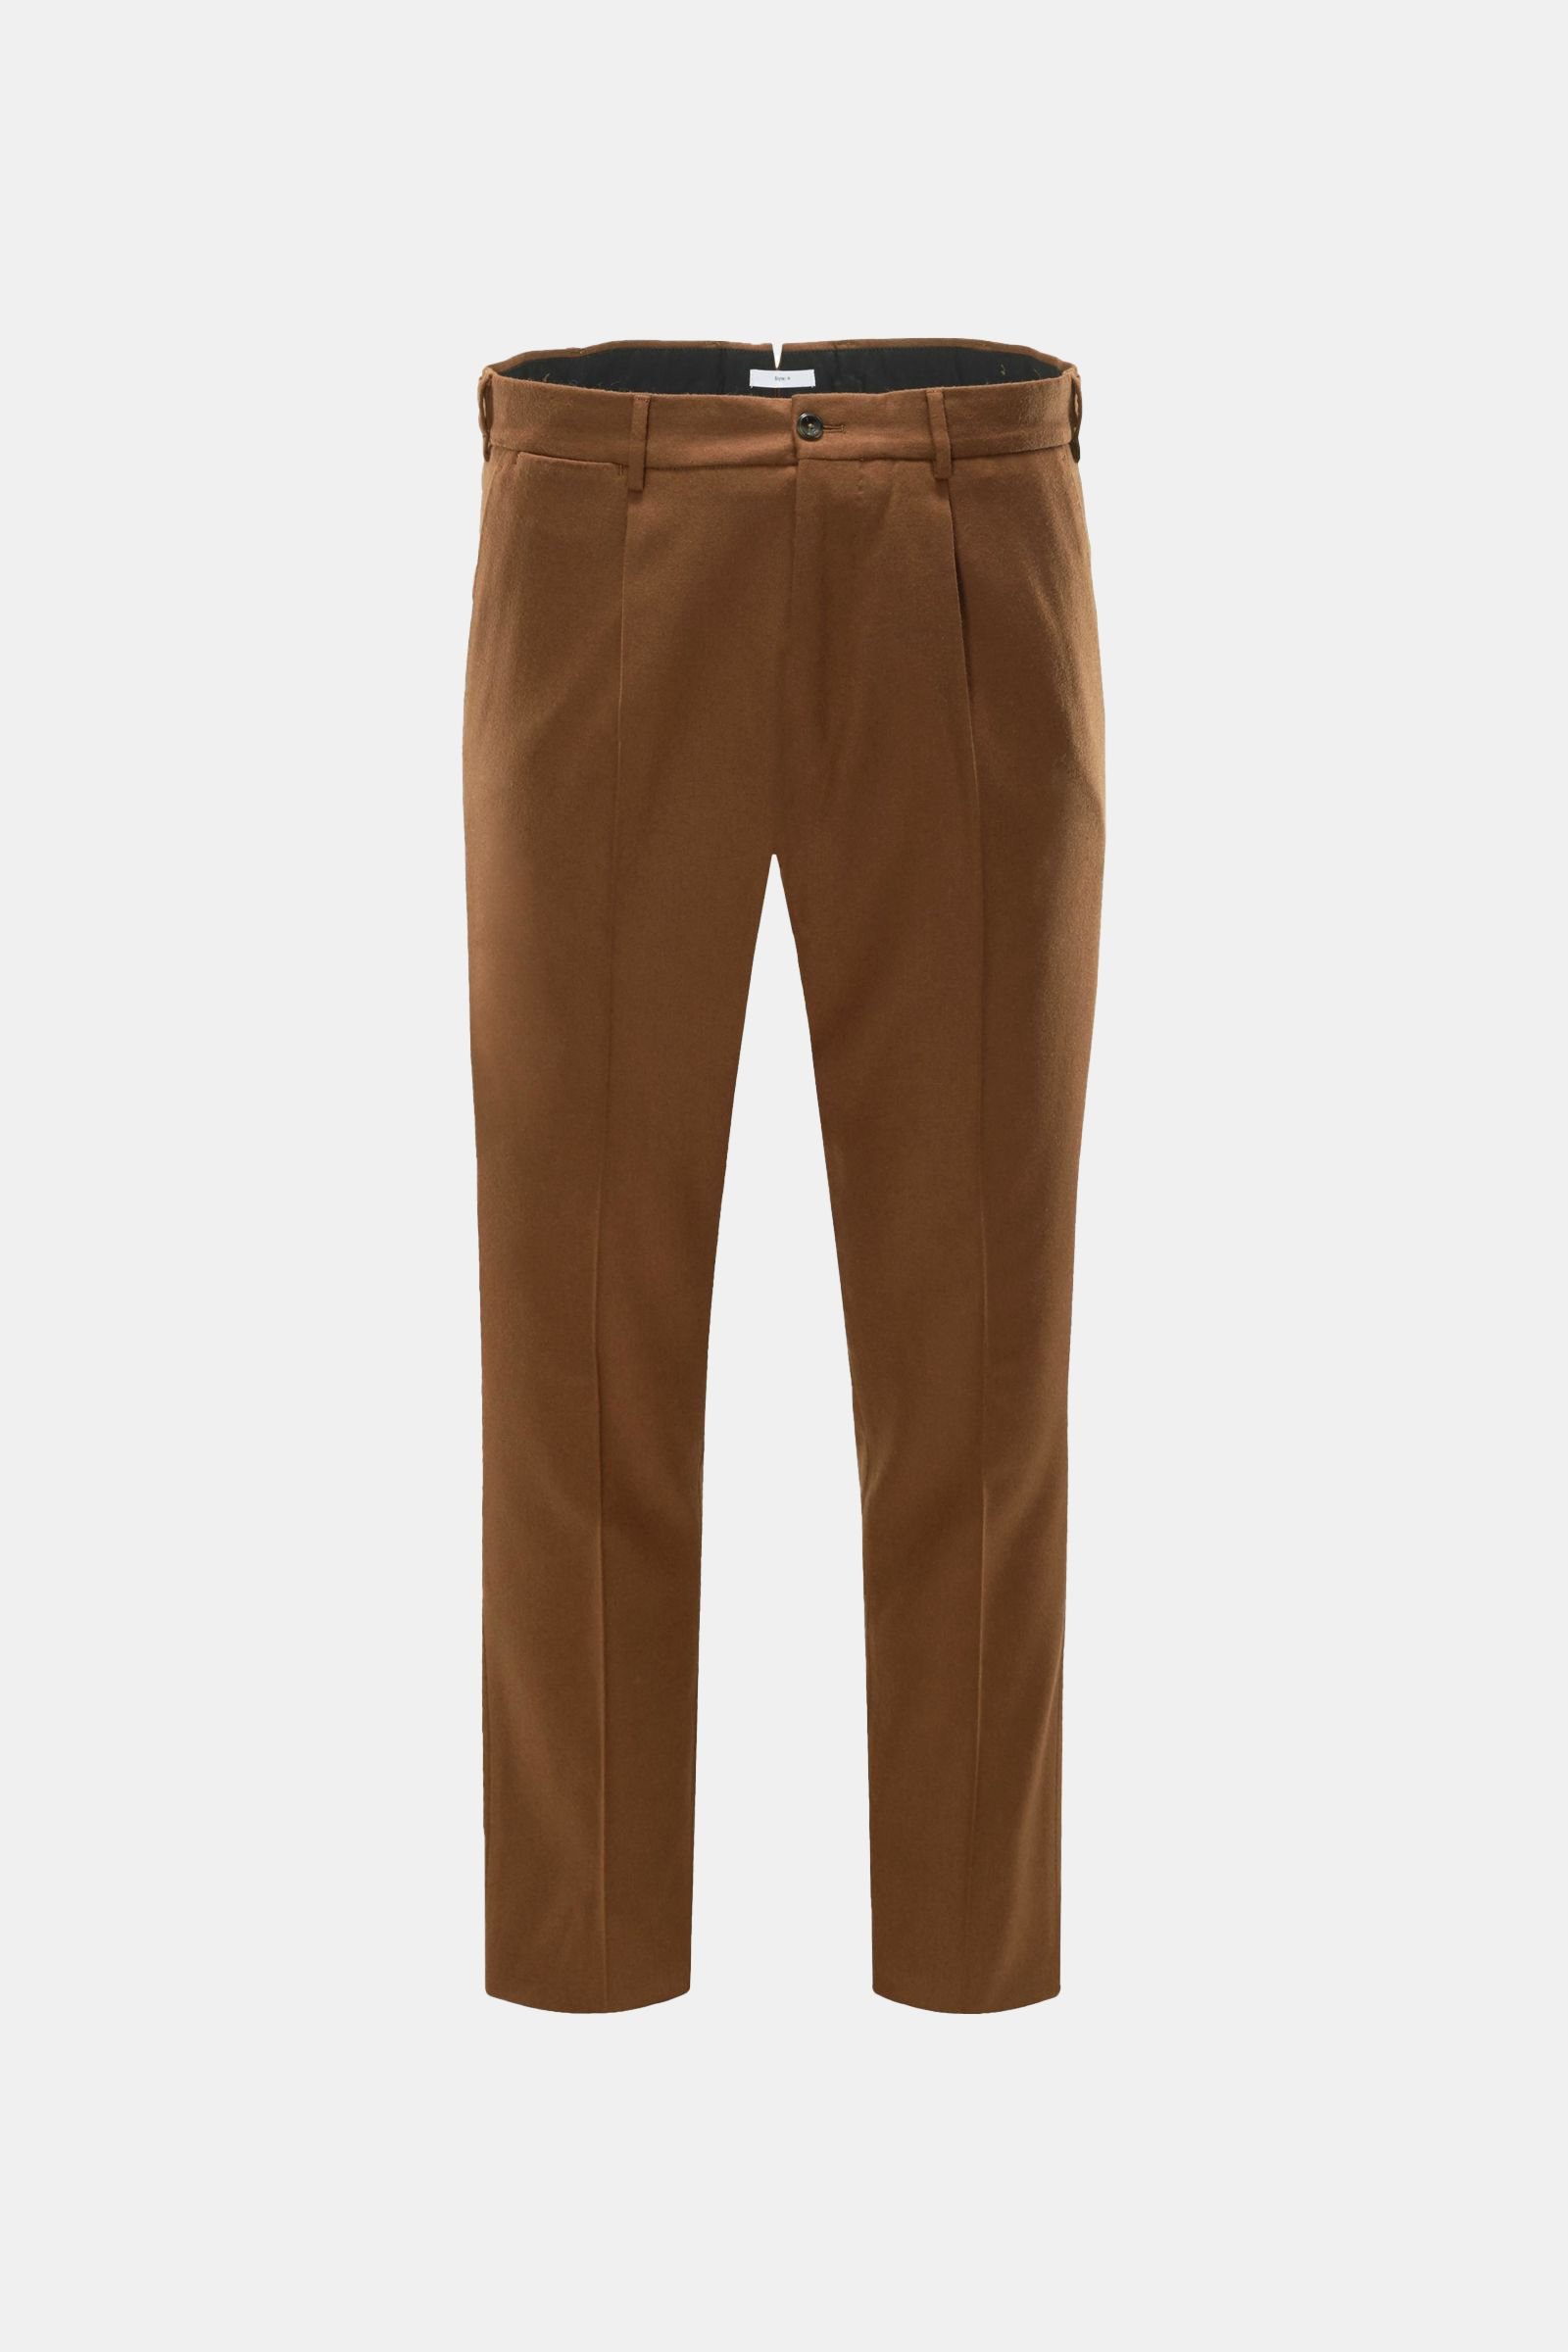 Wool trousers 'Style N' brown